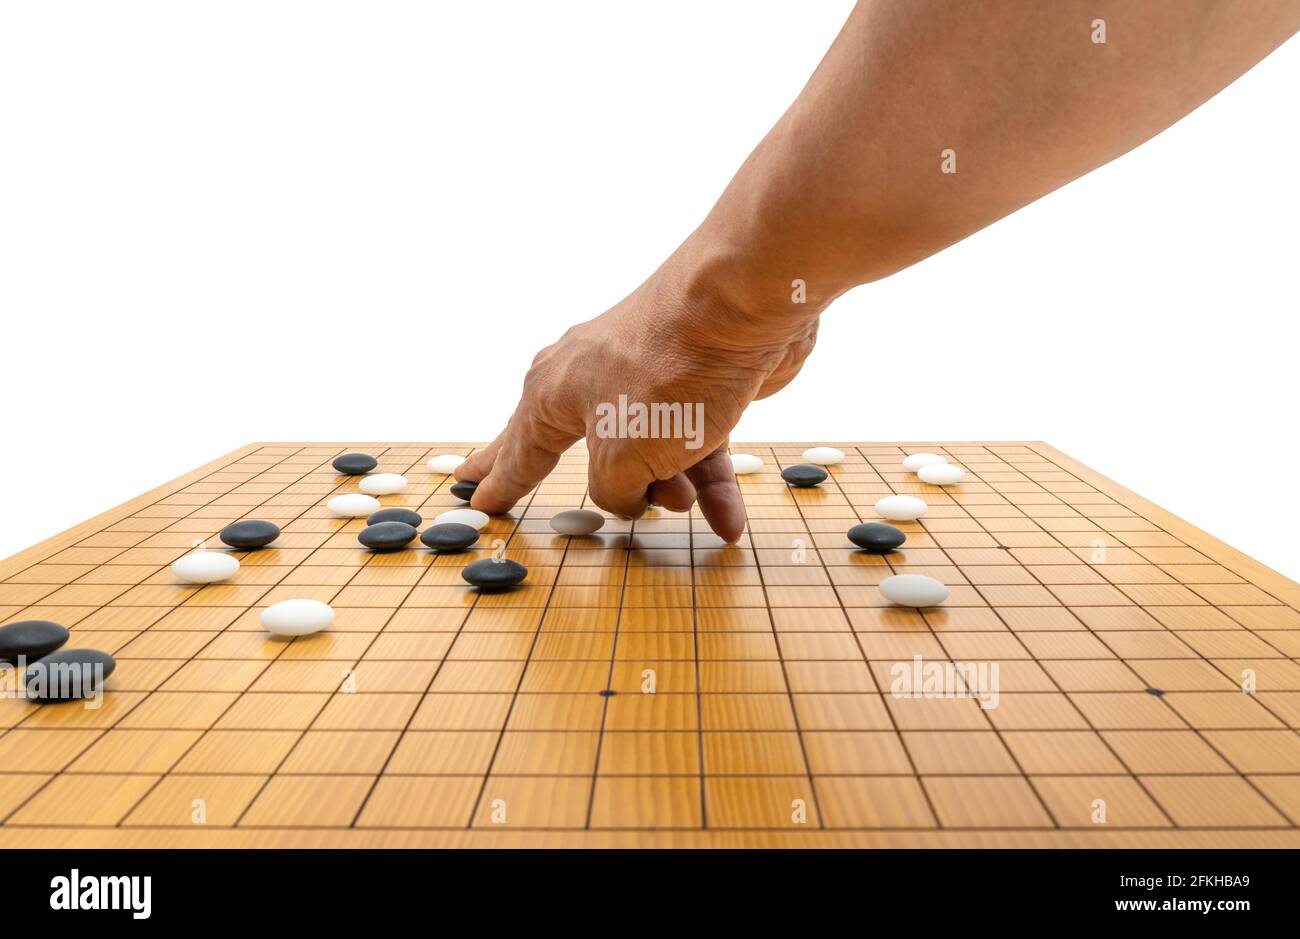 Juego de tablero de juego de la mano de Go o juego de tablero japonés del  ajedrez, utilice piedras negras y piedras blancas para crear territorio y  capturar a oponente. Imagen aislada